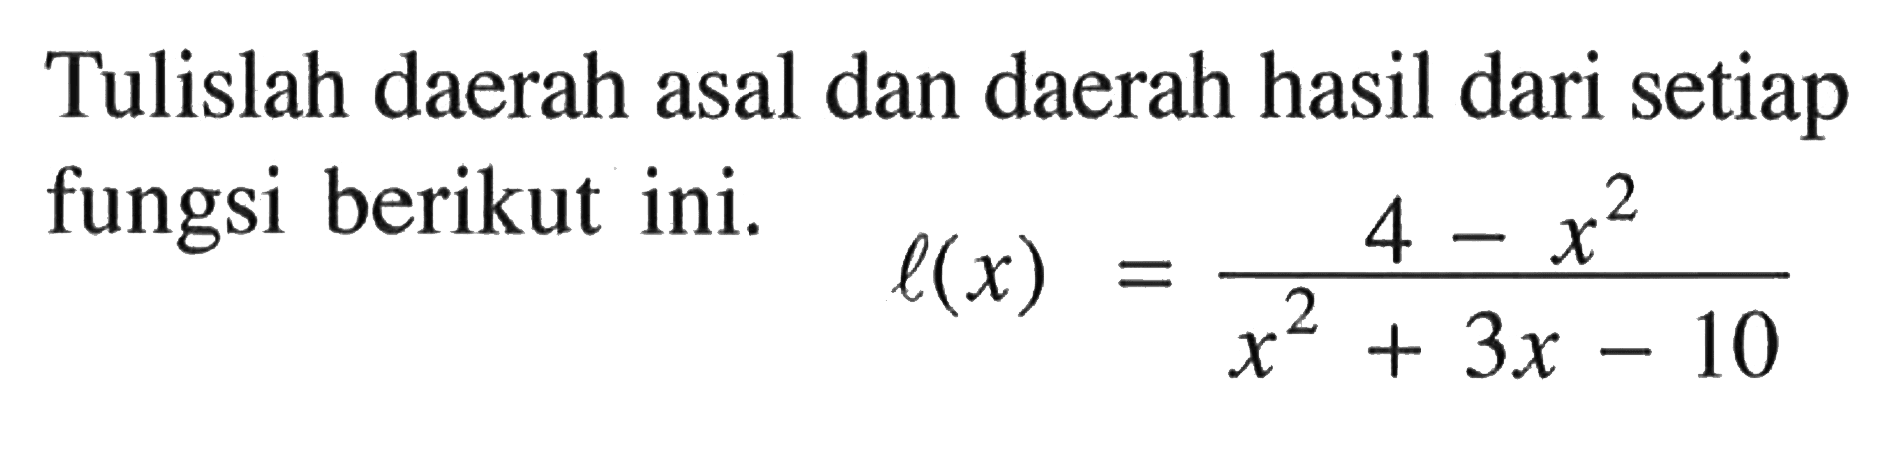 Tulislah daerah asal dan daerah hasil dari setiap fungsi berikut ini. l(x)=(4-x^2)/(x^2+3x-10)